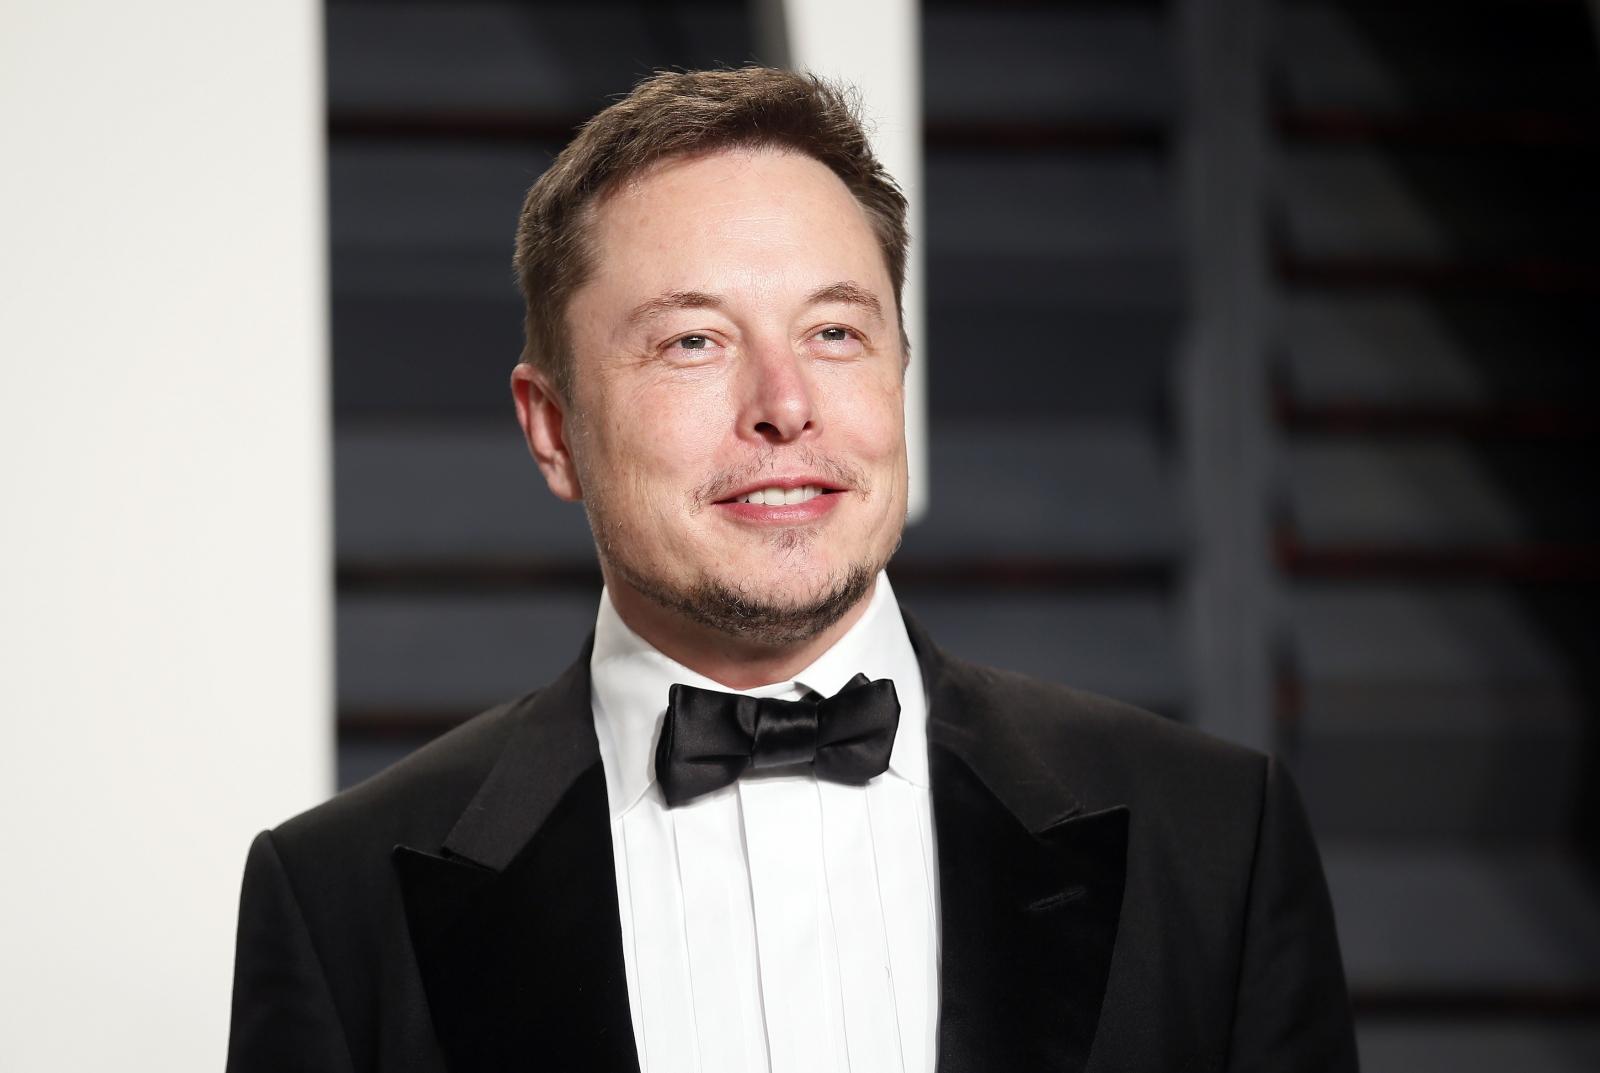 Elon Musk Wallpaper High Quality